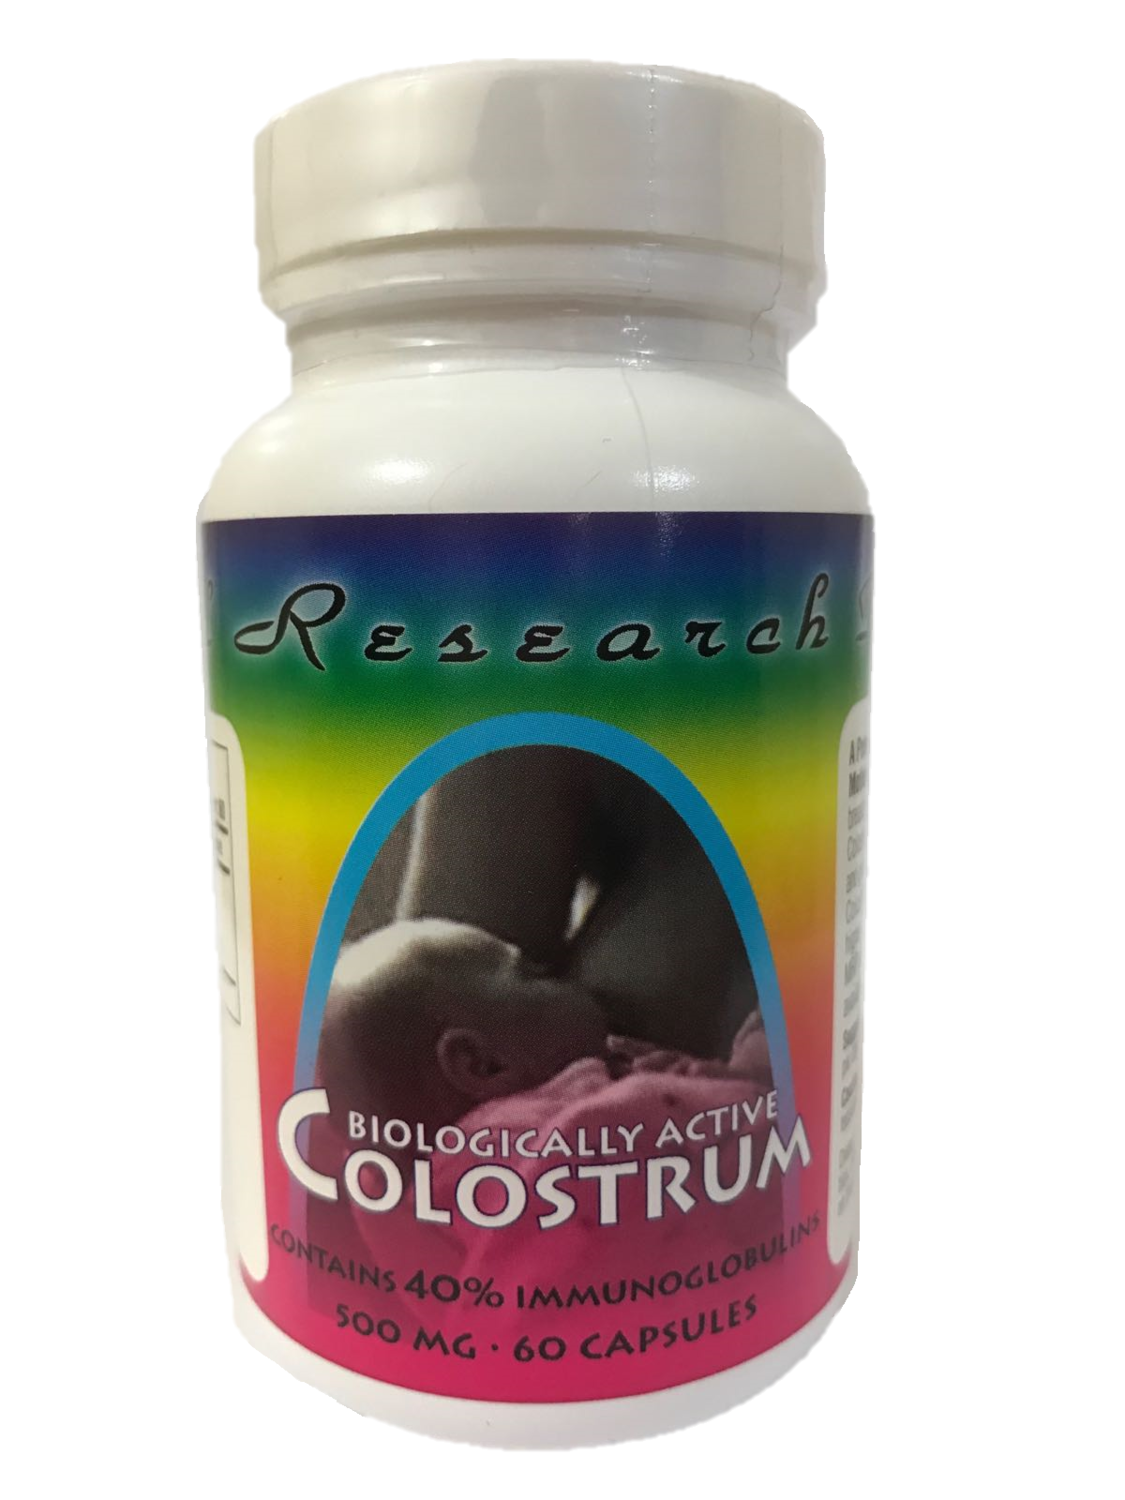 Colostrum 500 mg - 60 Capsules